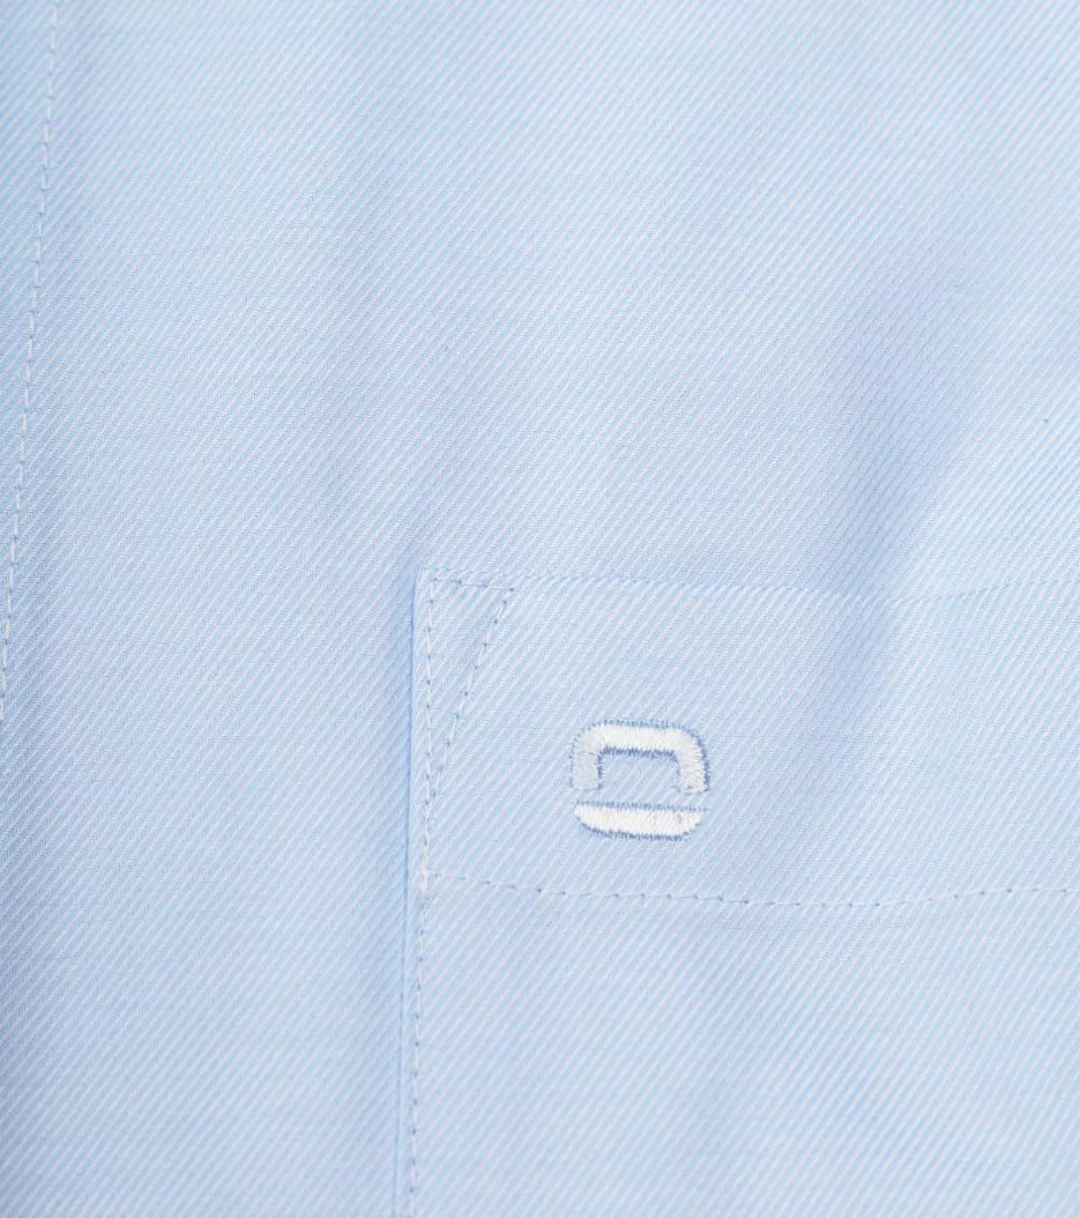 OLYMP Baumwolle Hemd Luxor Blau - Größe 39 günstig online kaufen